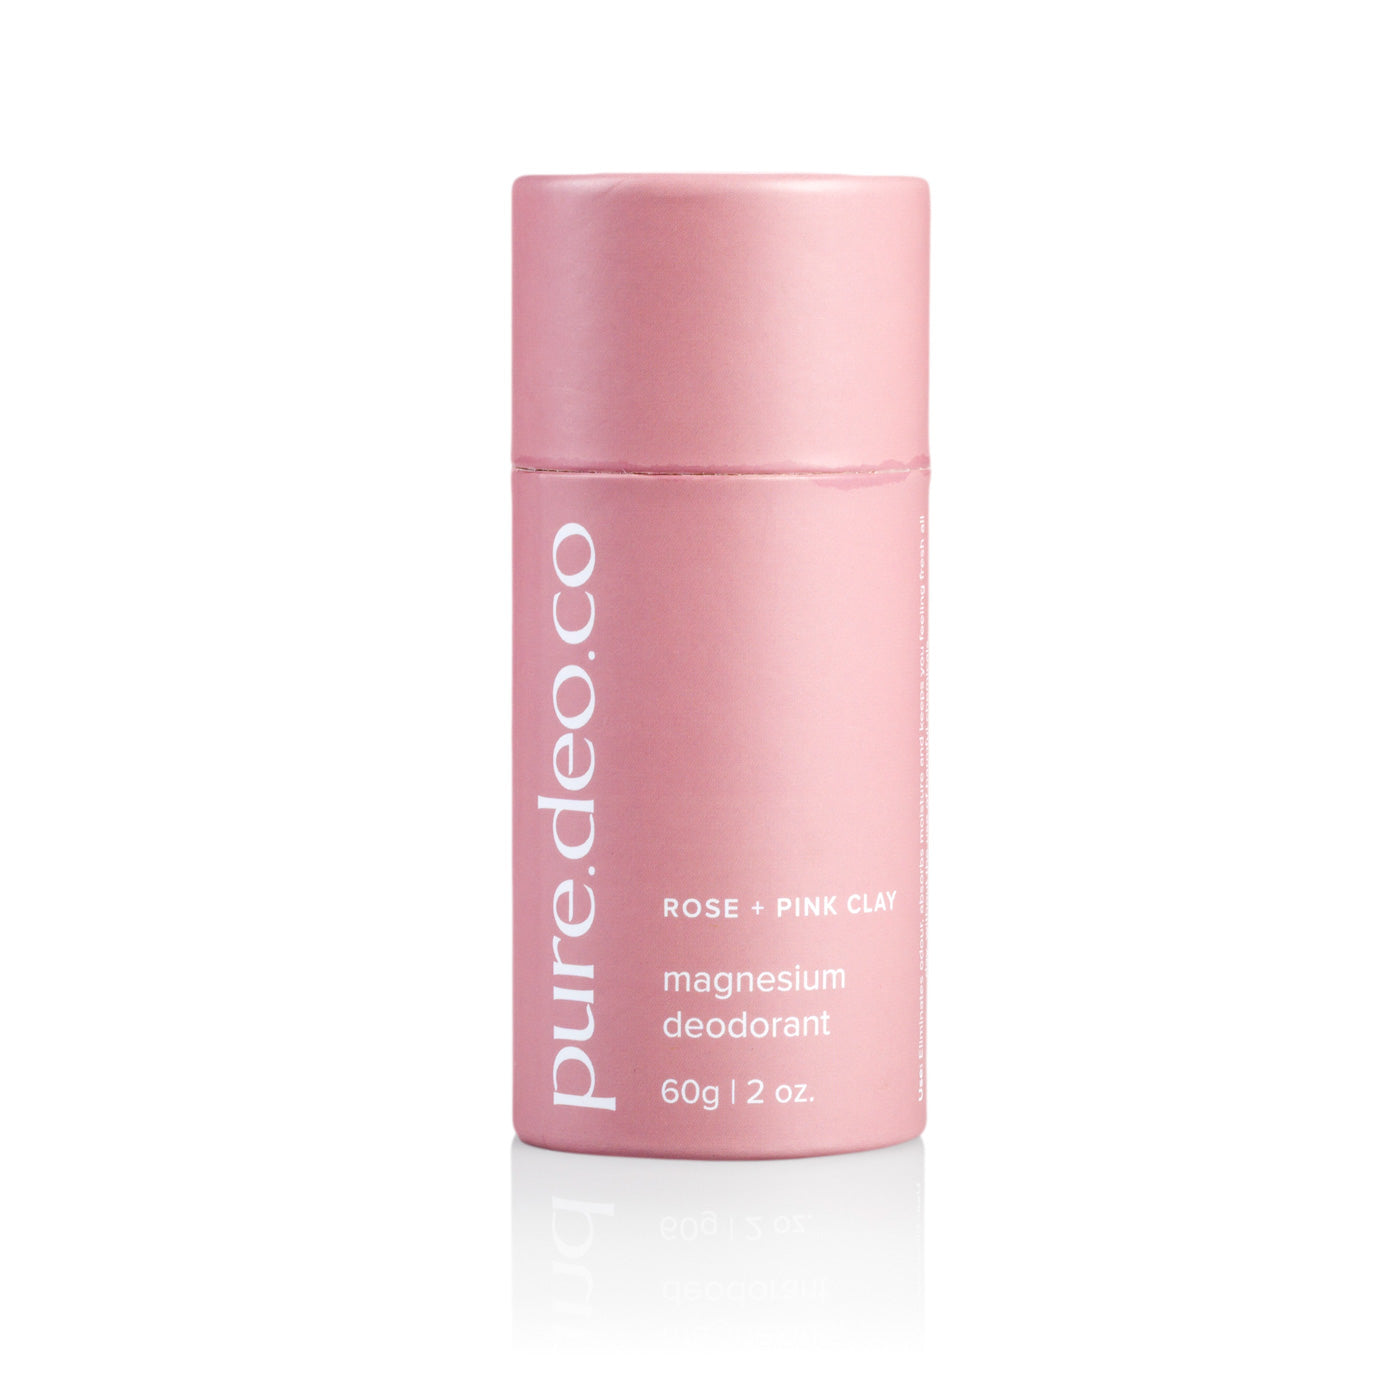 Magnesium Deodorant - Rose + Pink Clay